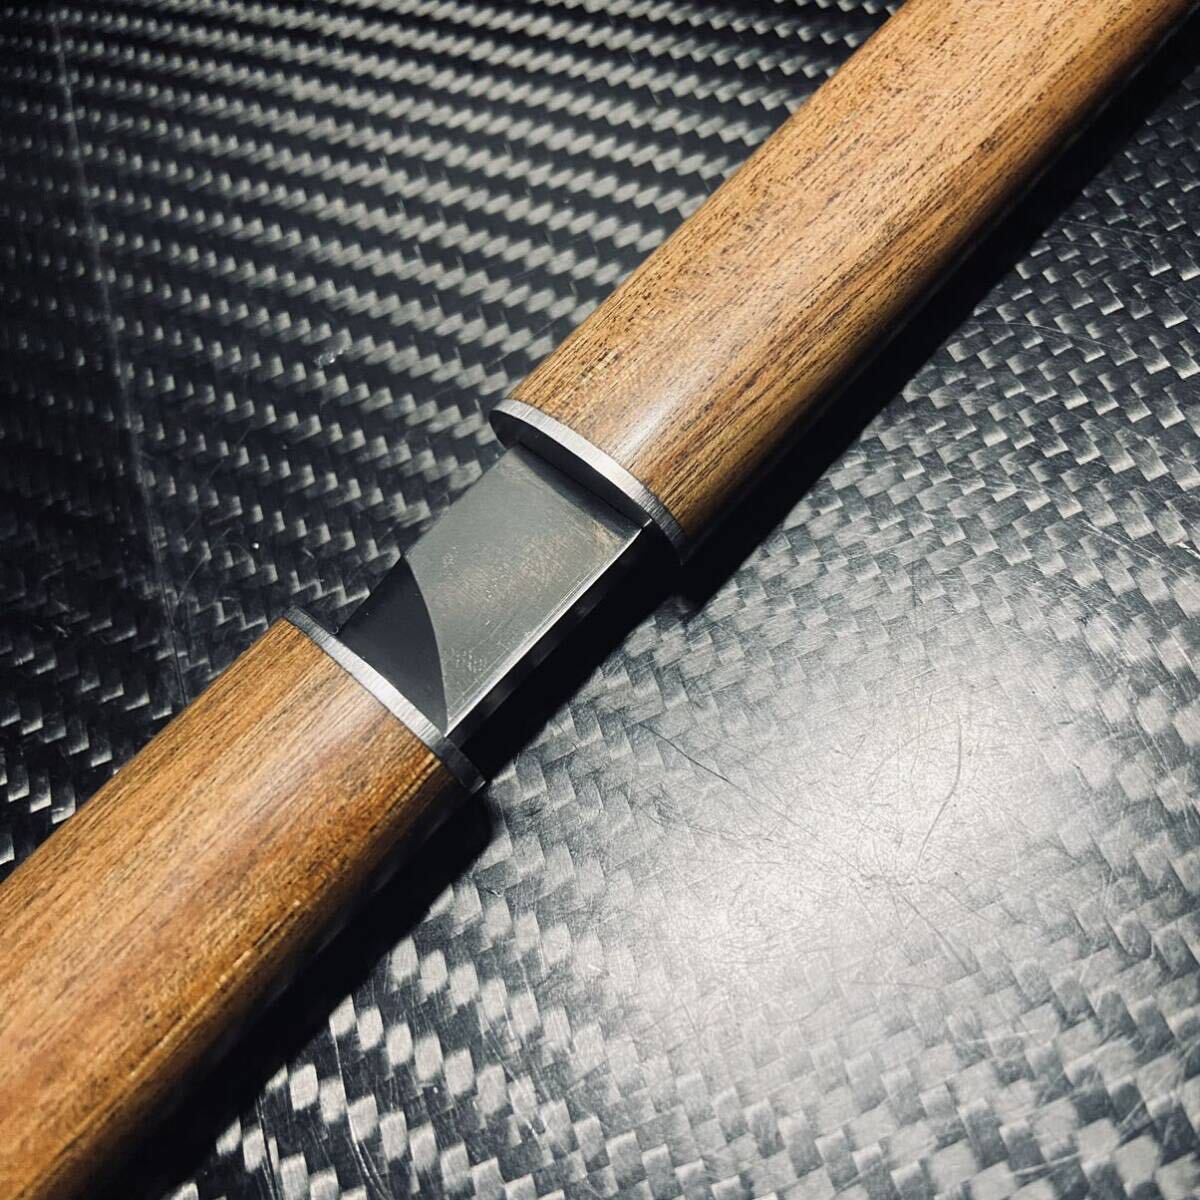 木製短刀 和風短刀 木鞘ナイフ 和式ナイフ 伝統工芸 日本刀型 112g 24cm 刃厚3cm _画像5